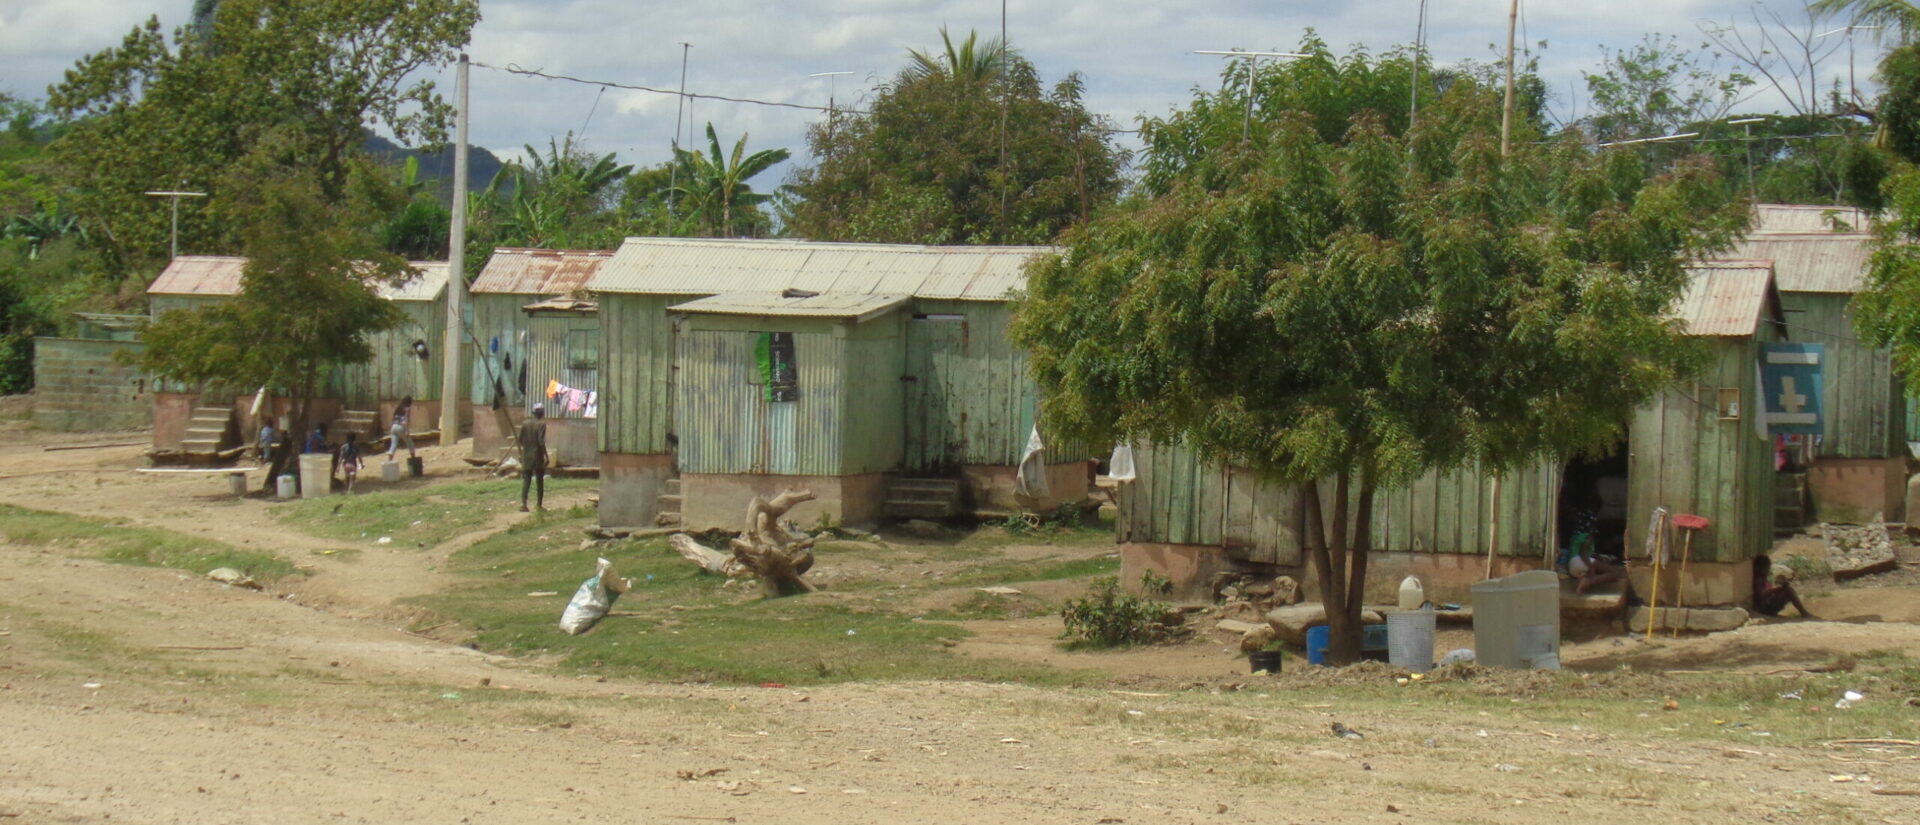 Les habitations mises à disposition par la compagnie sucrière Central Romana pour les travailleurs sont extrêmement précaires | © Dominicans for Justice and Peace